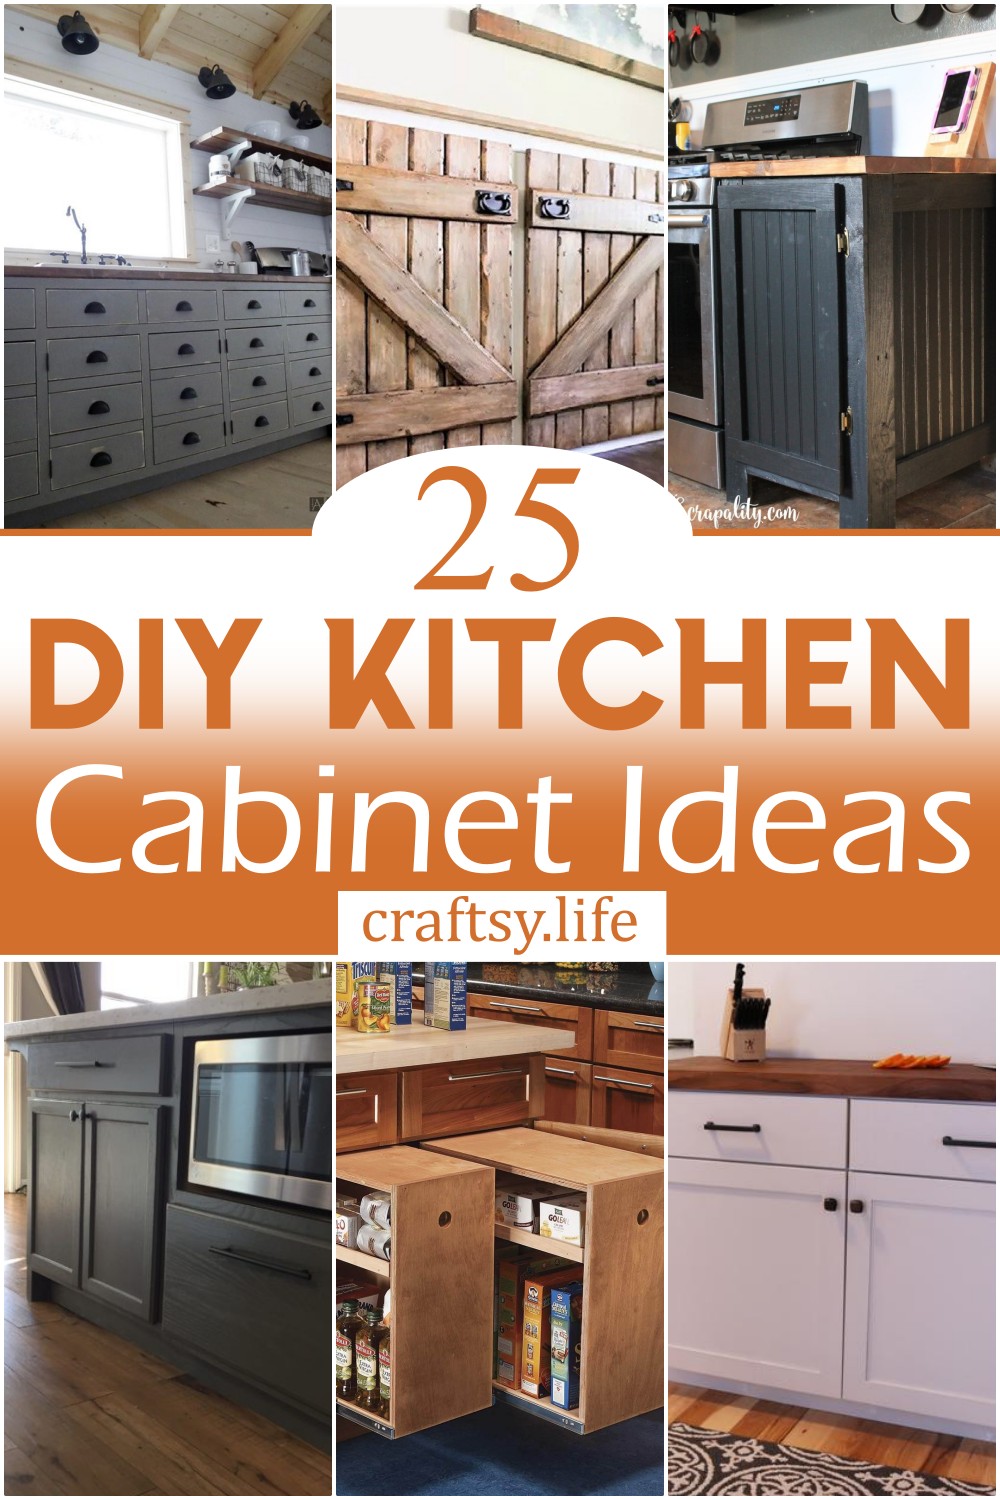 DIY Kitchen Cabinet Ideas